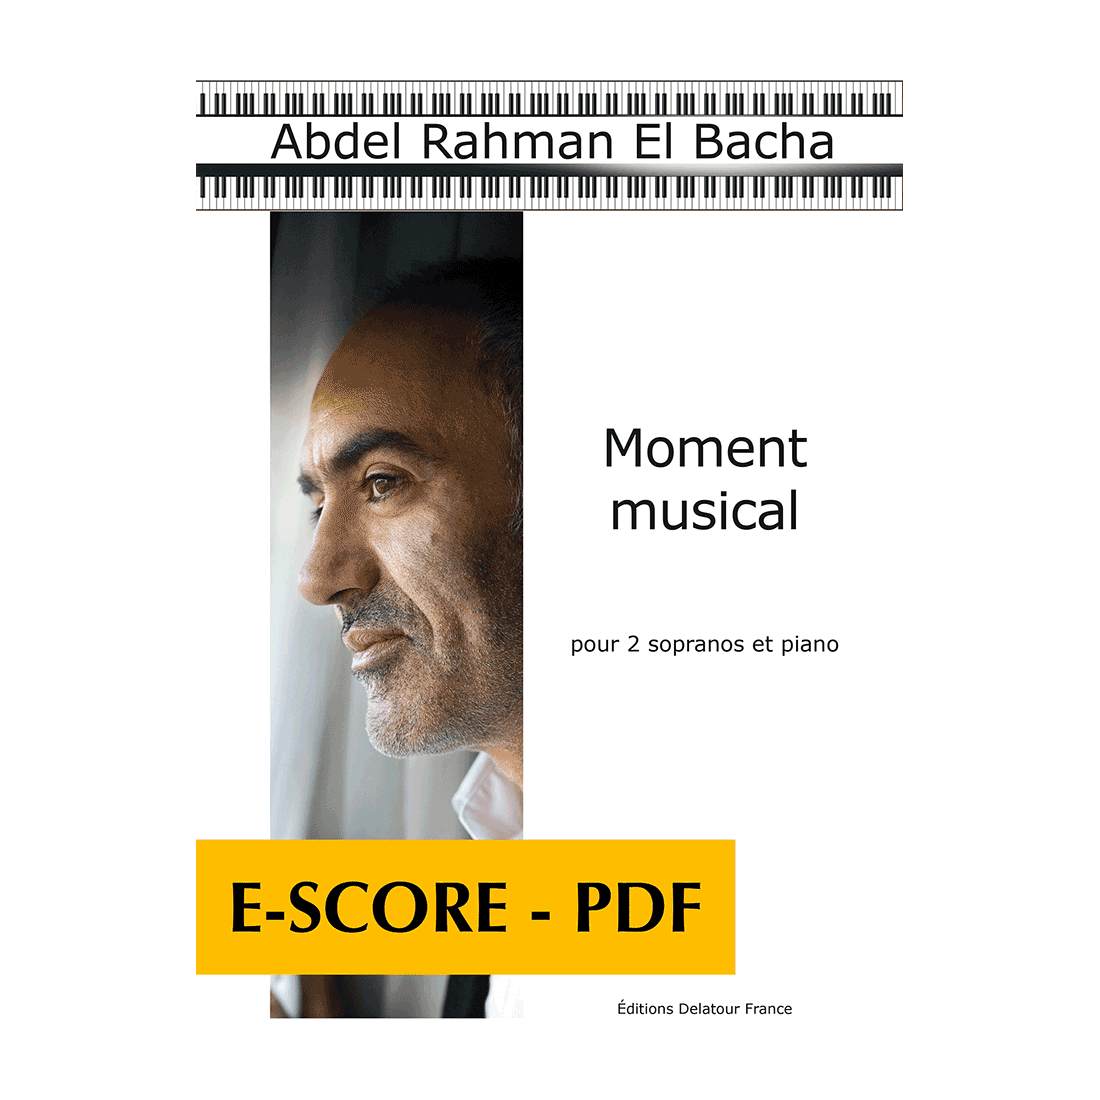 Moment musical pour 2 sopranos et piano - E-score PDF